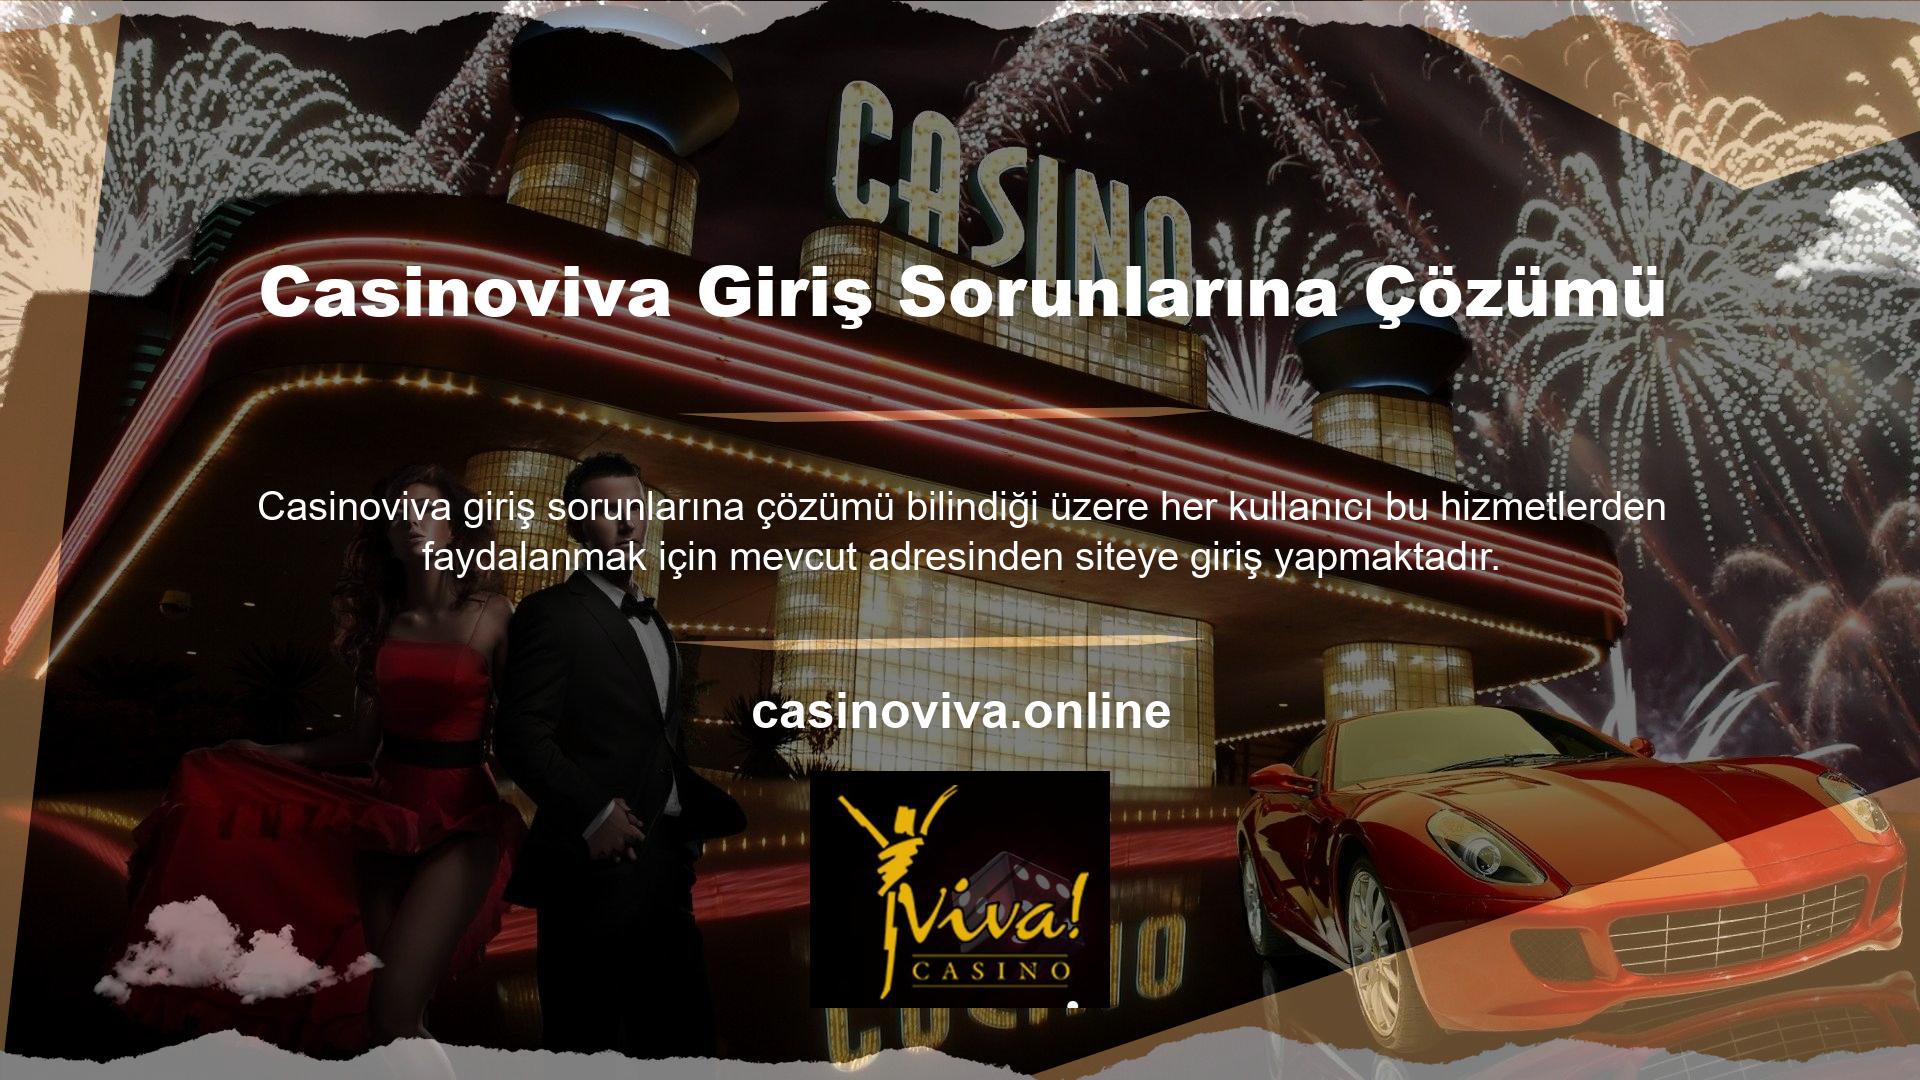 Bu sitelerden biri olan Casinoviva, kullanıcılara giriş sorunlarını gidermek için ayrıntılı alternatifler sunar